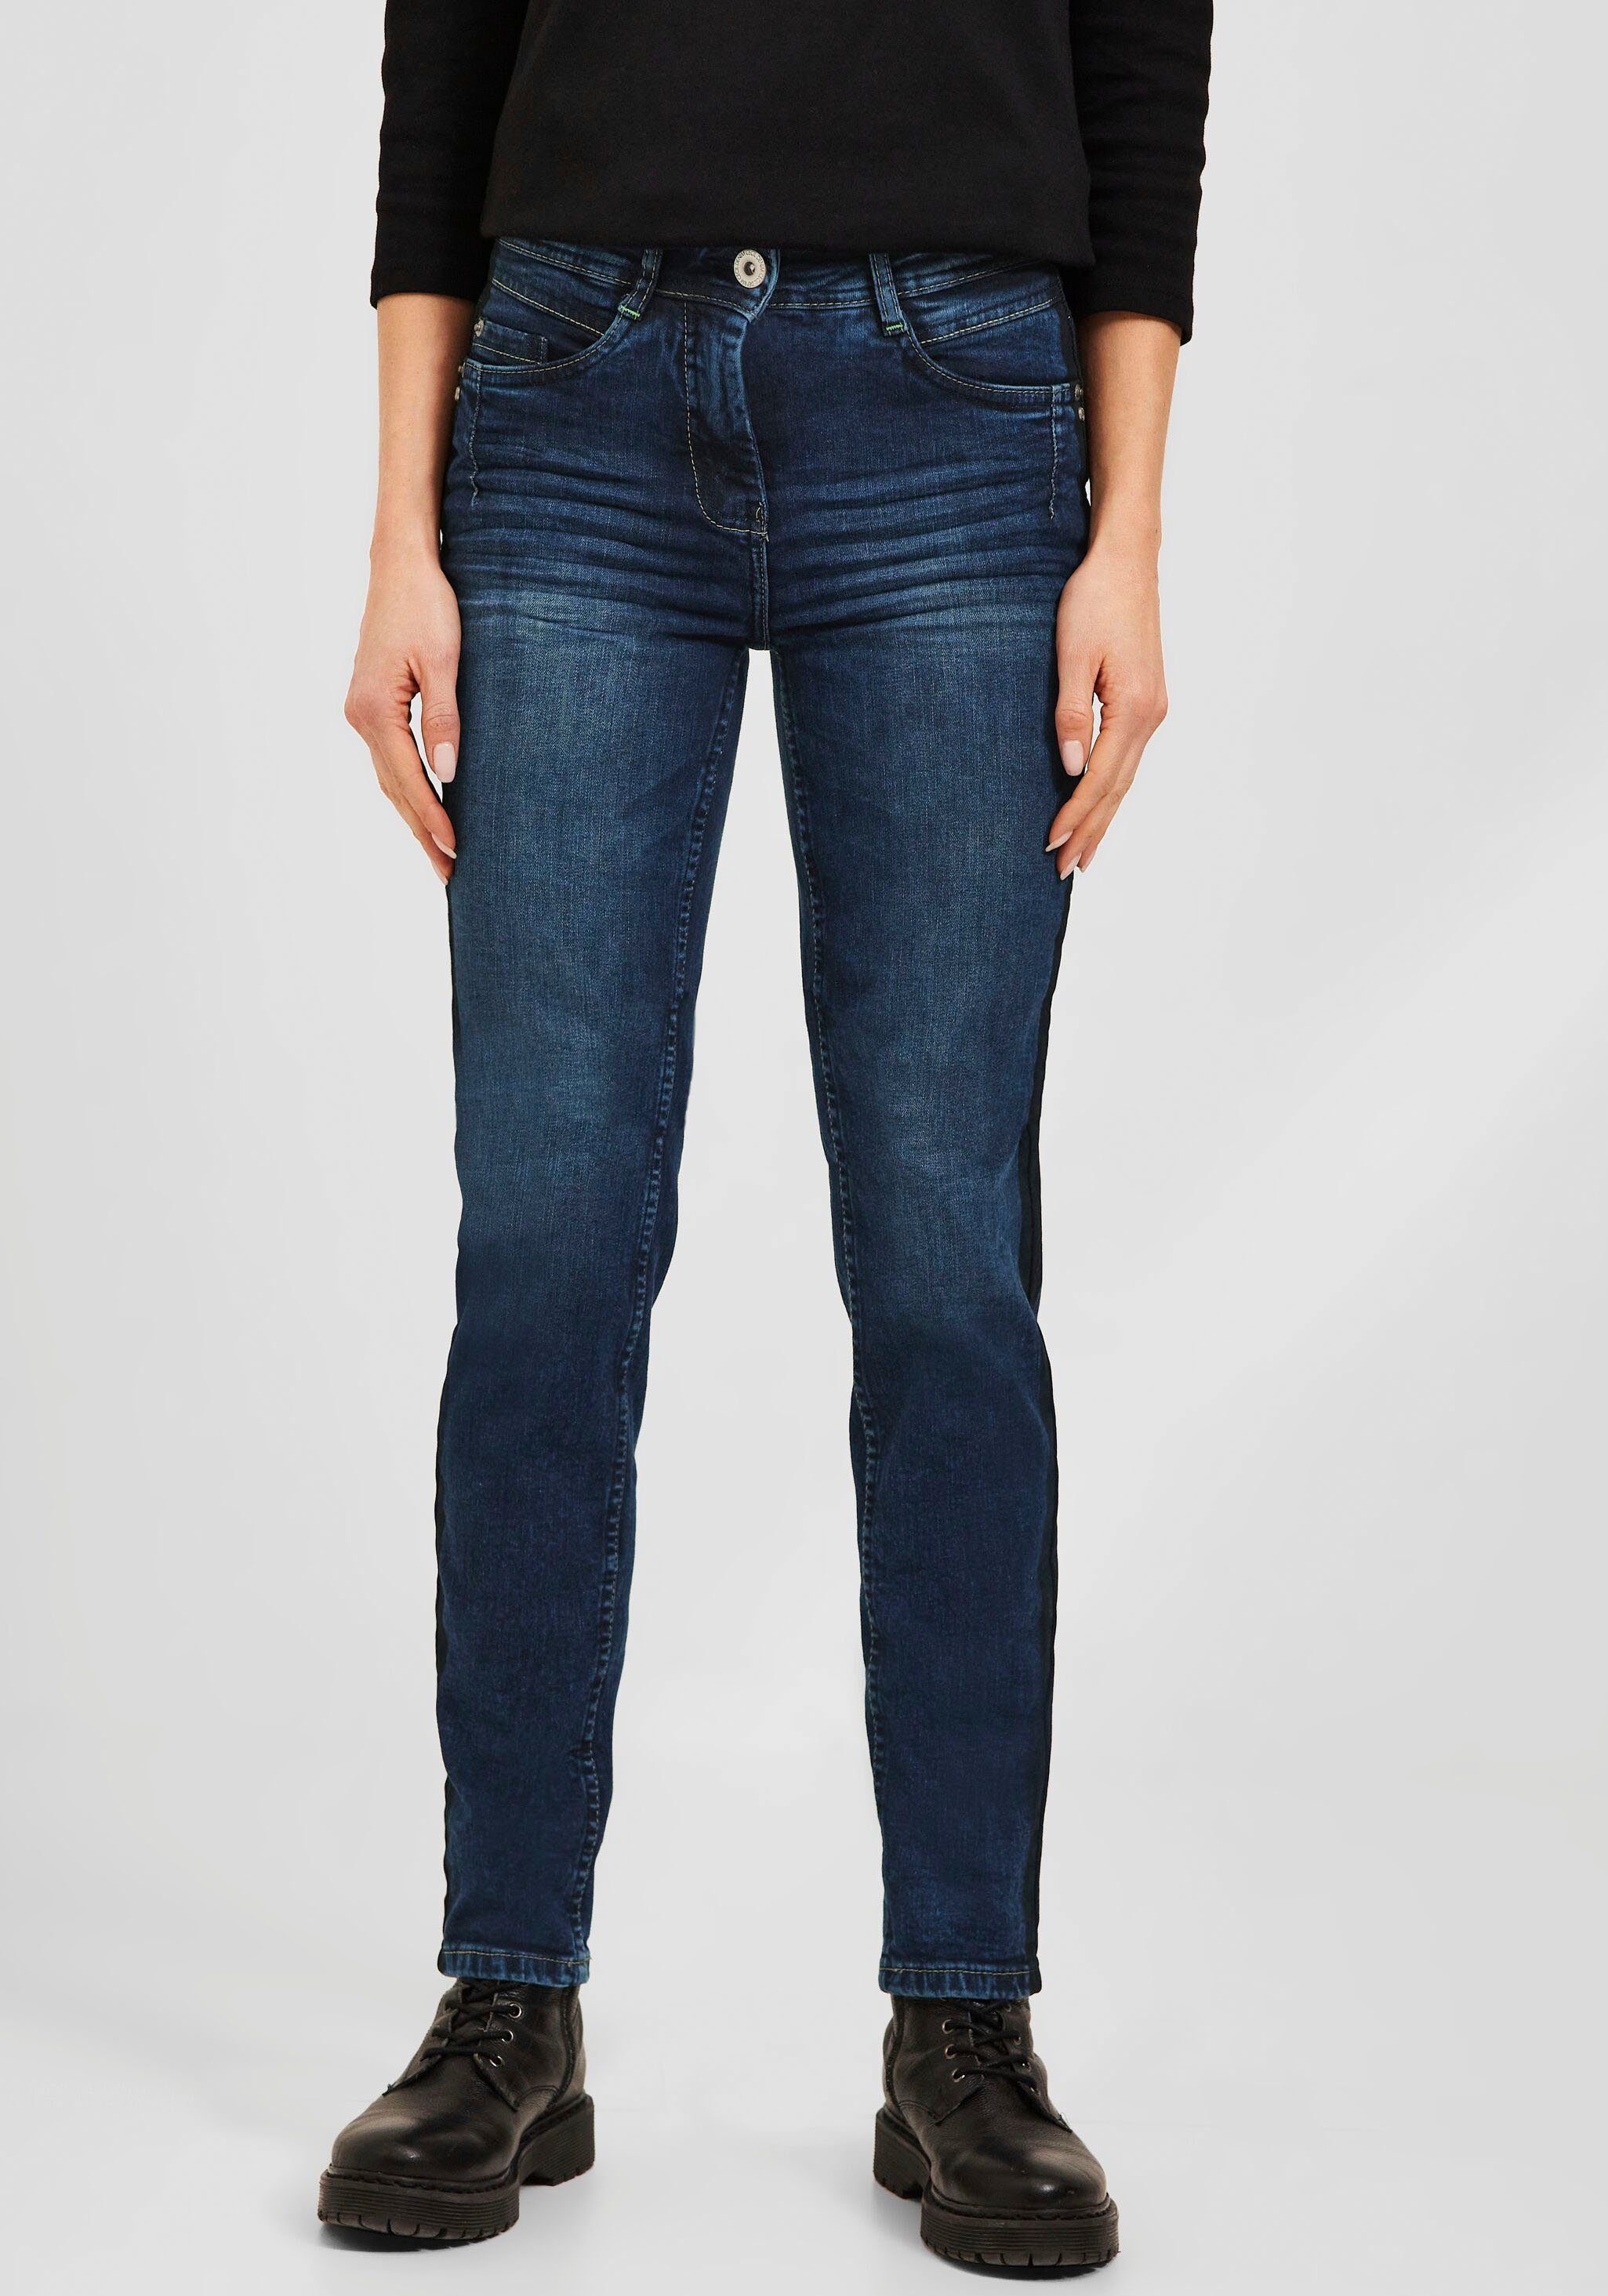 Cecil Slim-fit-Jeans Toronto Galonstreifen, Beine Schmale mit seitlichem Silhouette vorteilhafte für eine Style